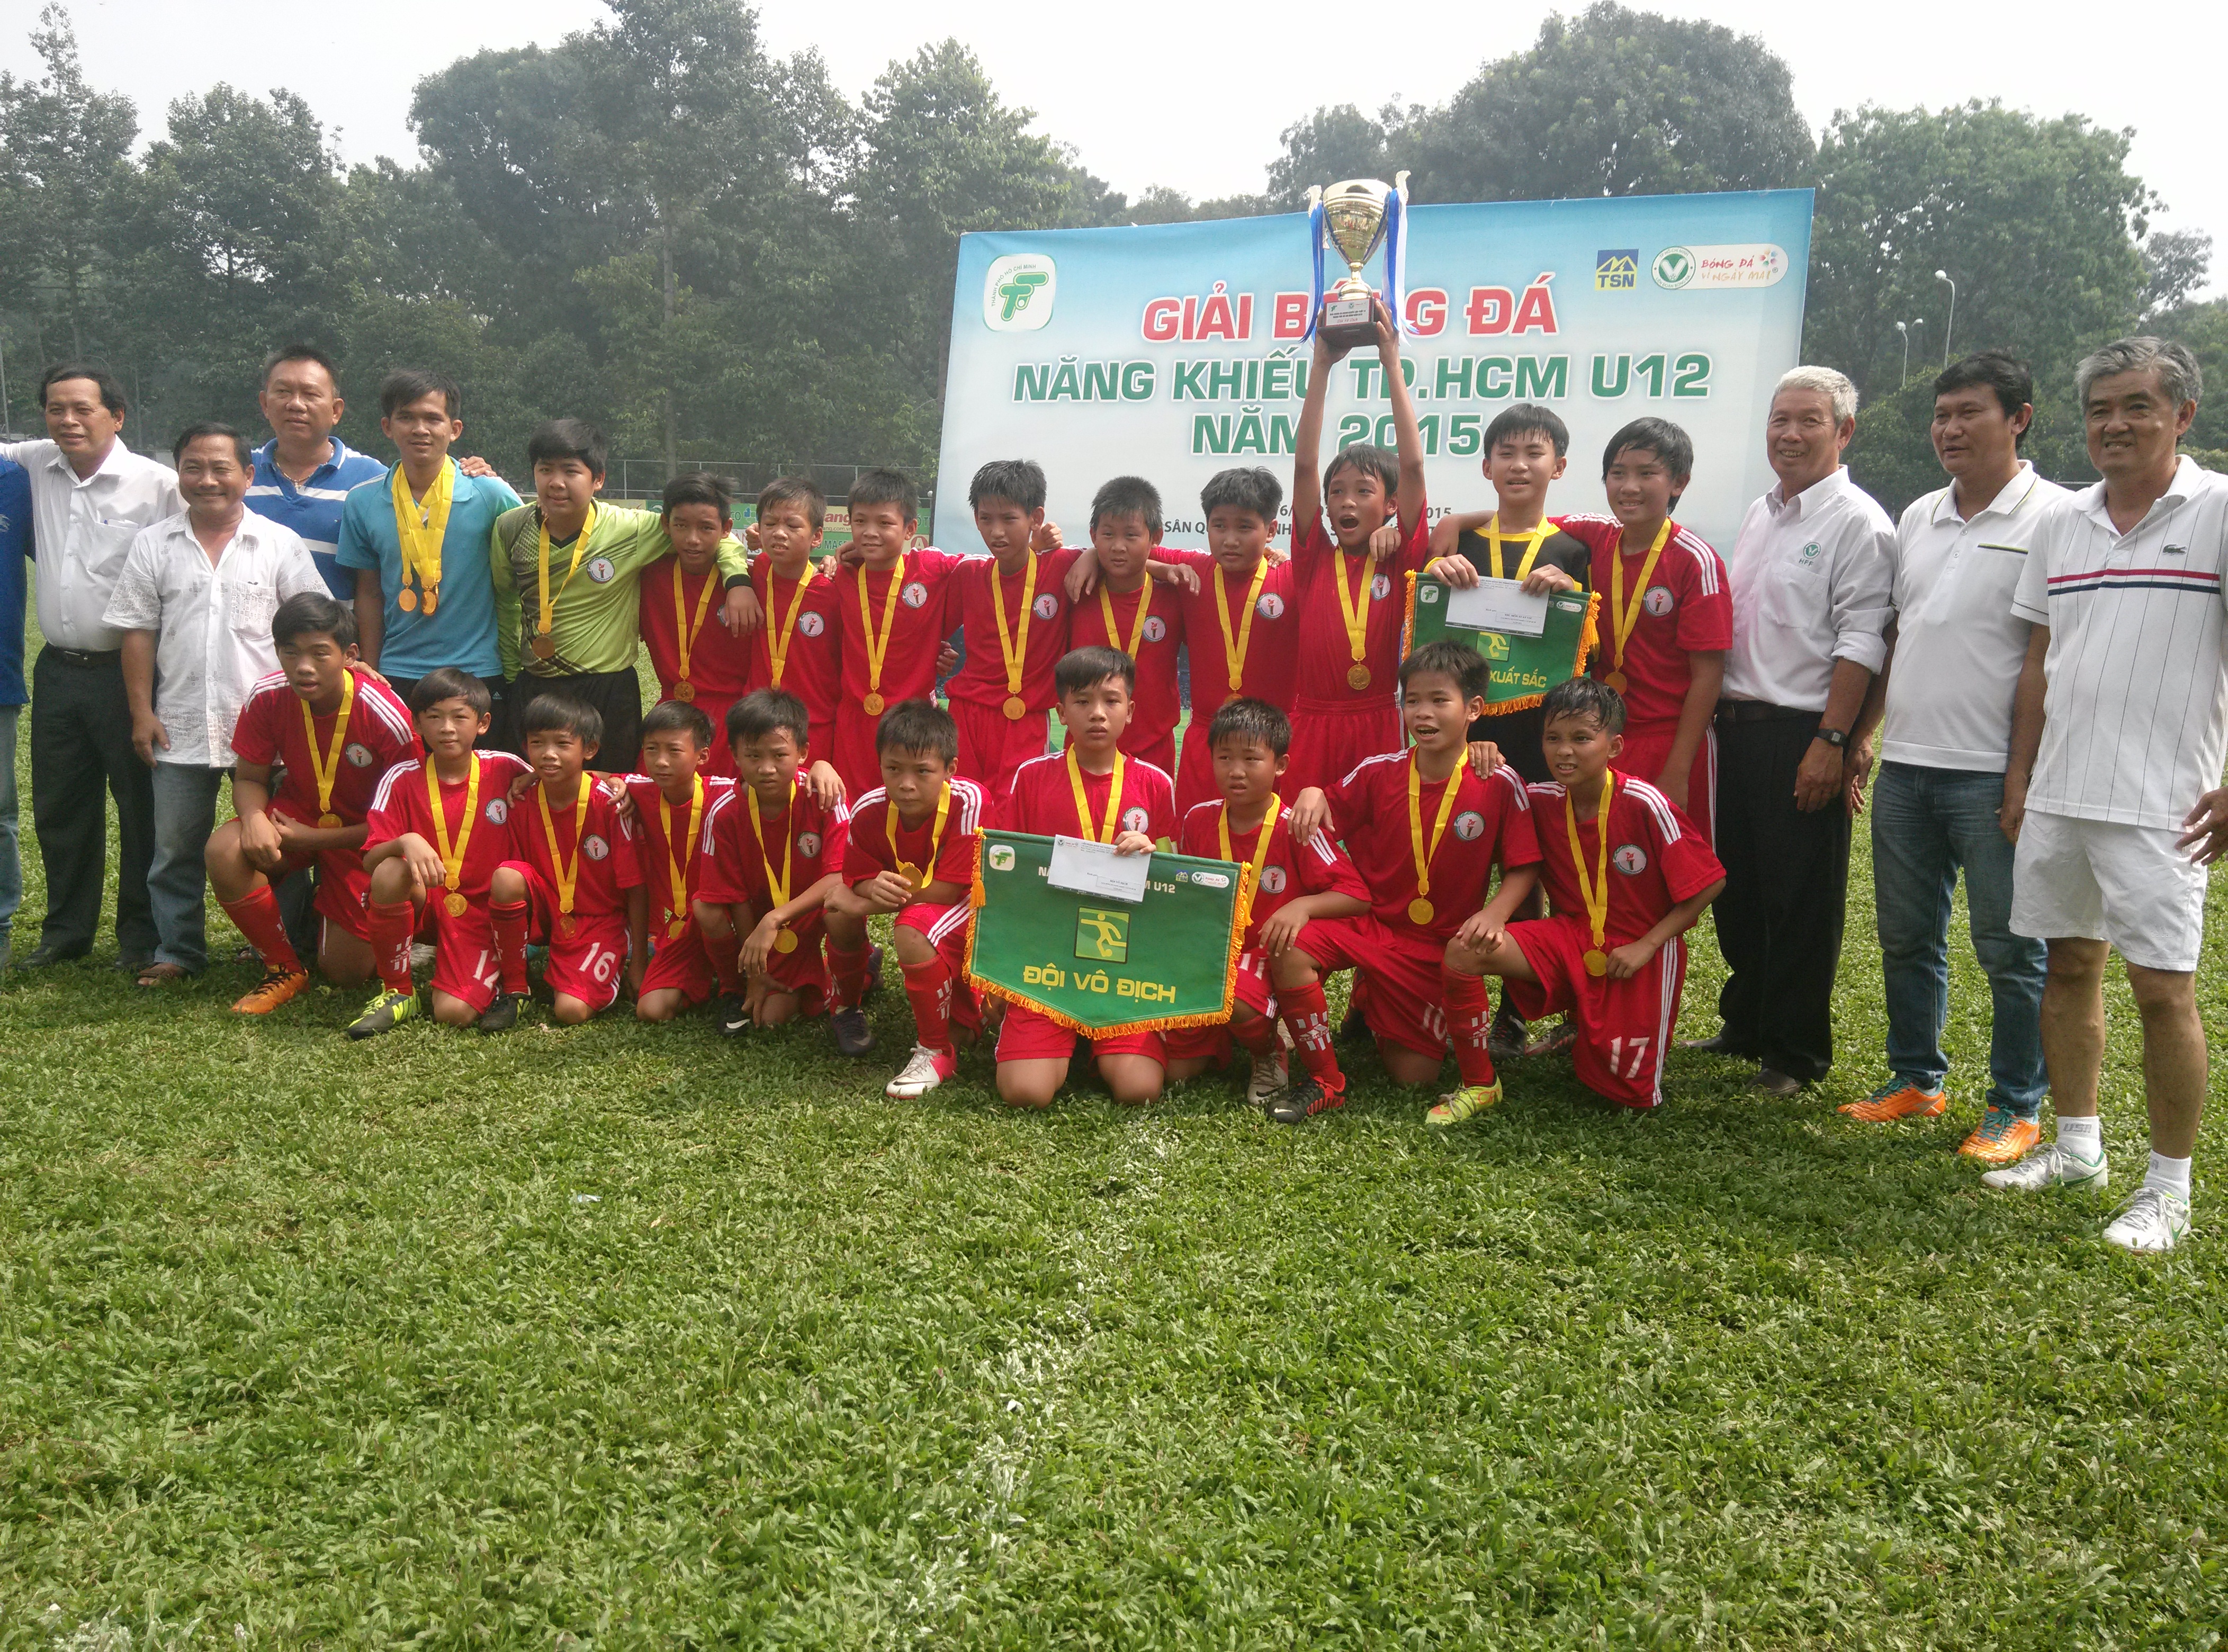 Giải Bóng đá năng khiếu U12 TP. HCM: Quận Phú Nhuận giữ vững danh hiệu quán quân